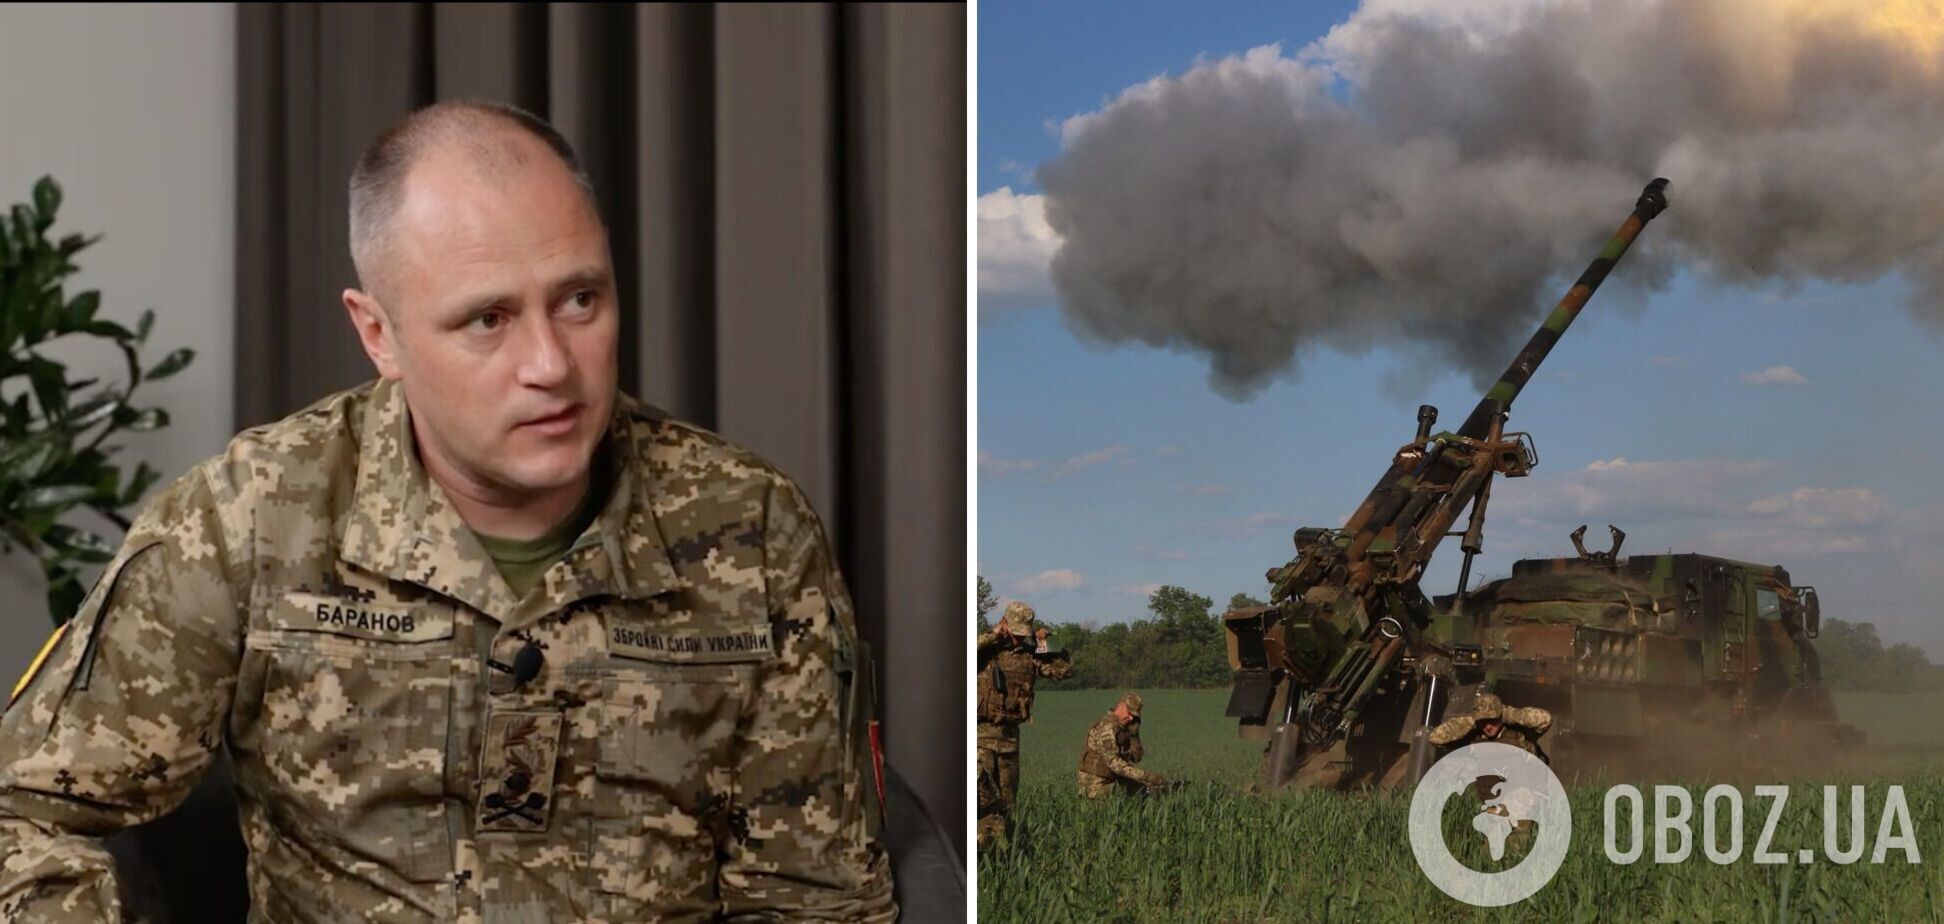 'У нас образцов вооружения больше, чем у НАТО': украинский генерал заверил, что у ВСУ нет проблем с овладением западным оружием